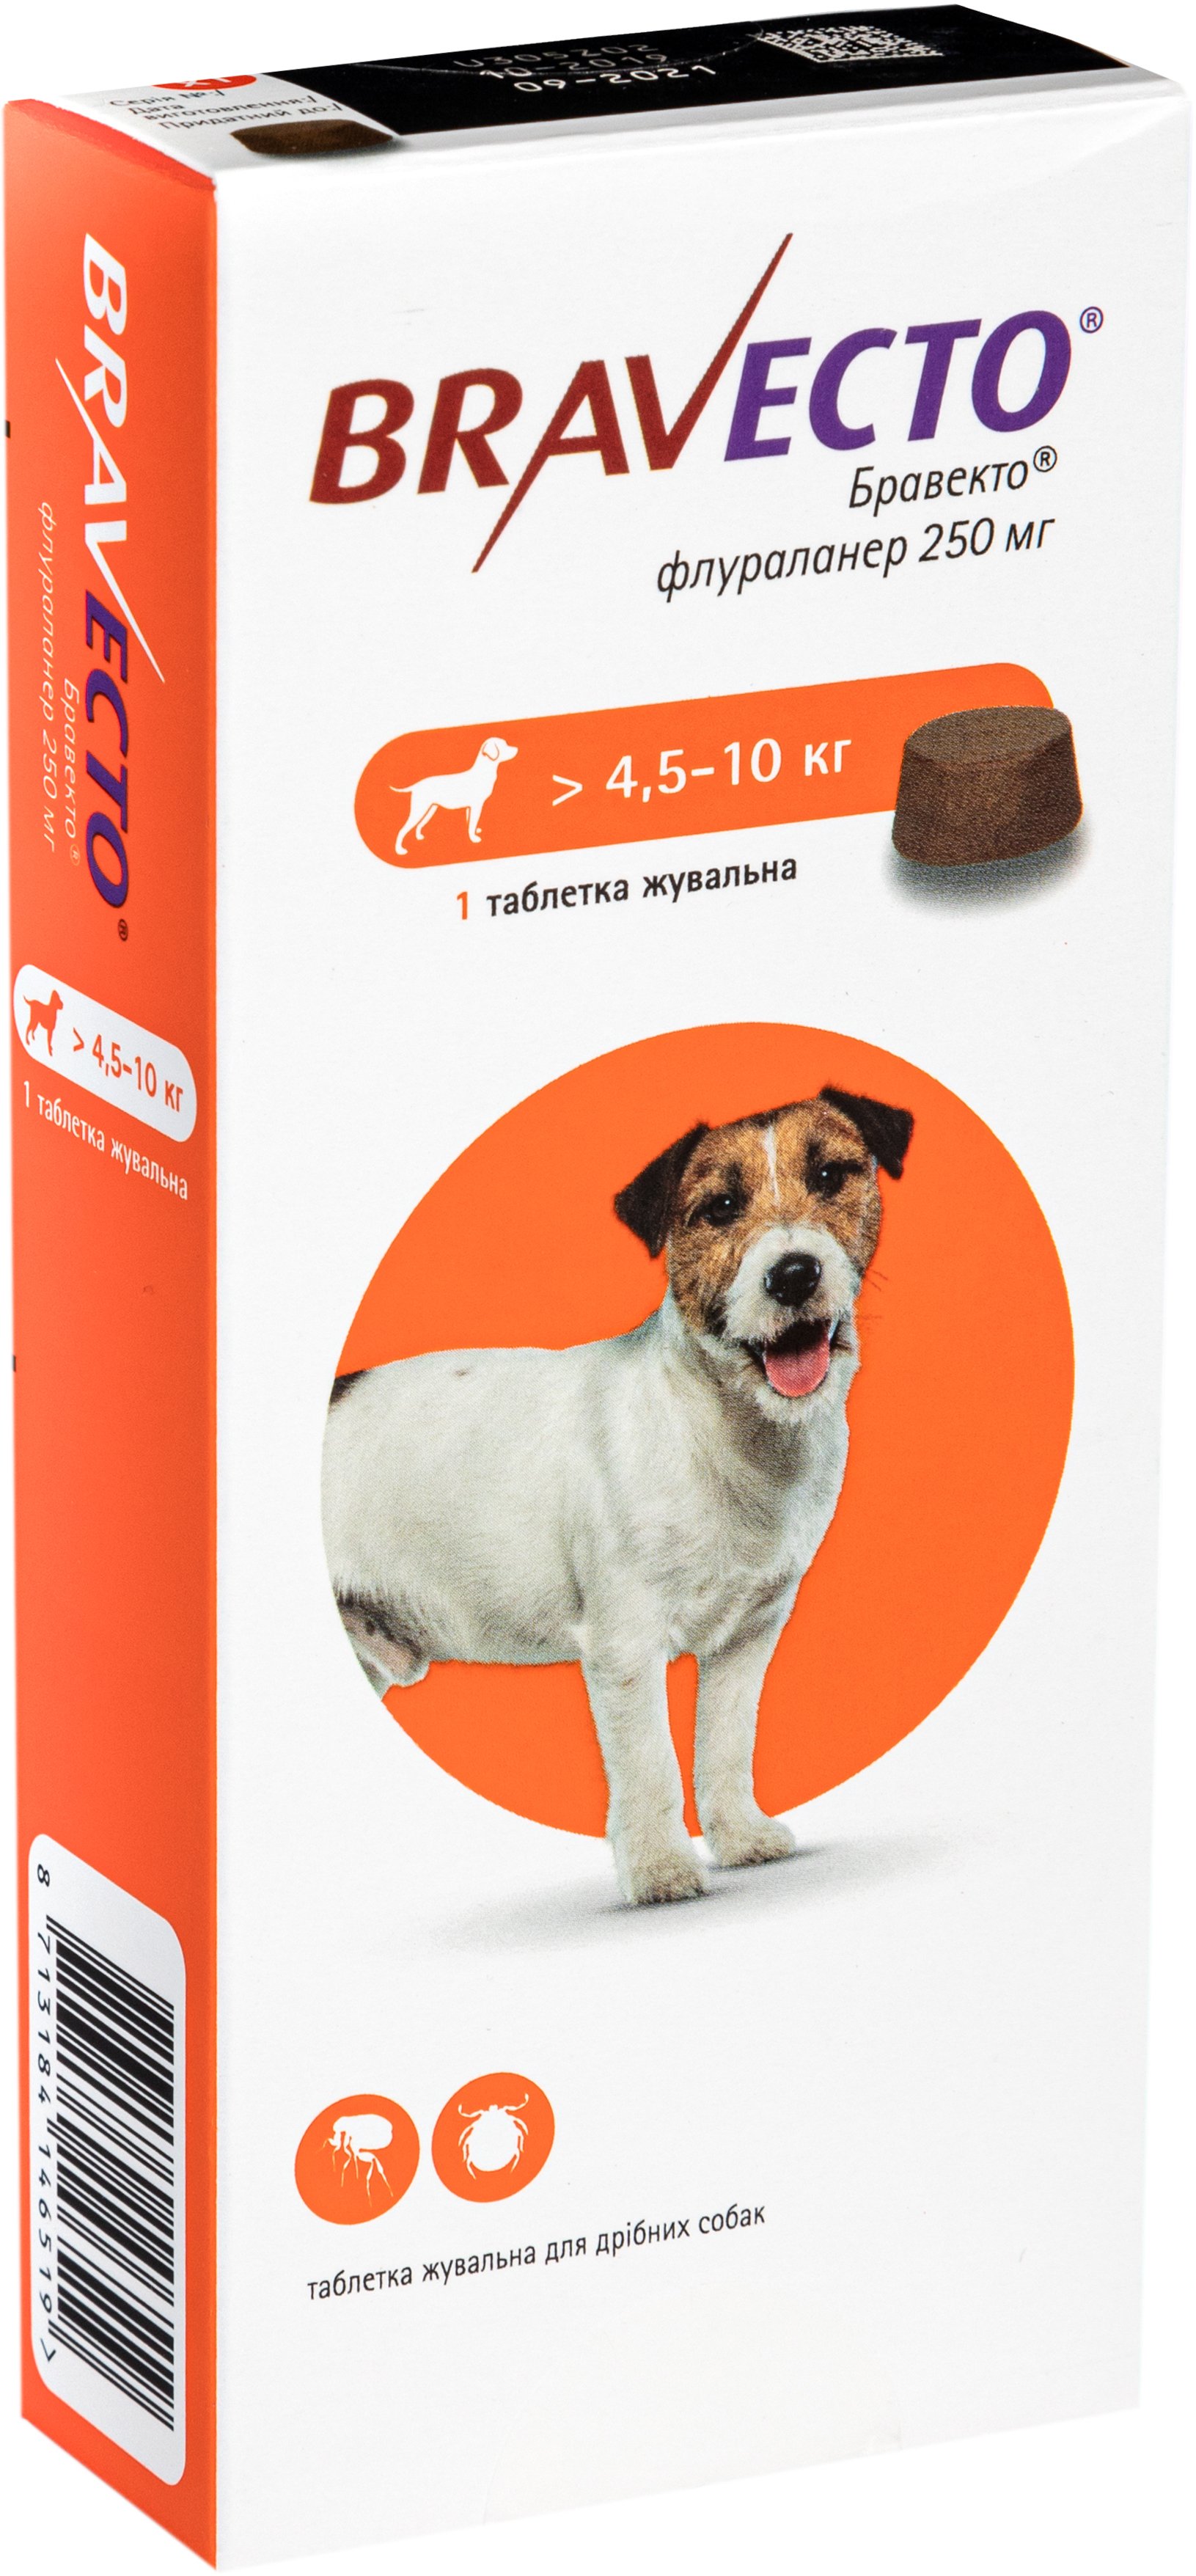 Жевательная таблетка Bravecto от блох и клещей для собак с весом 4,5-10 кг - фото 2